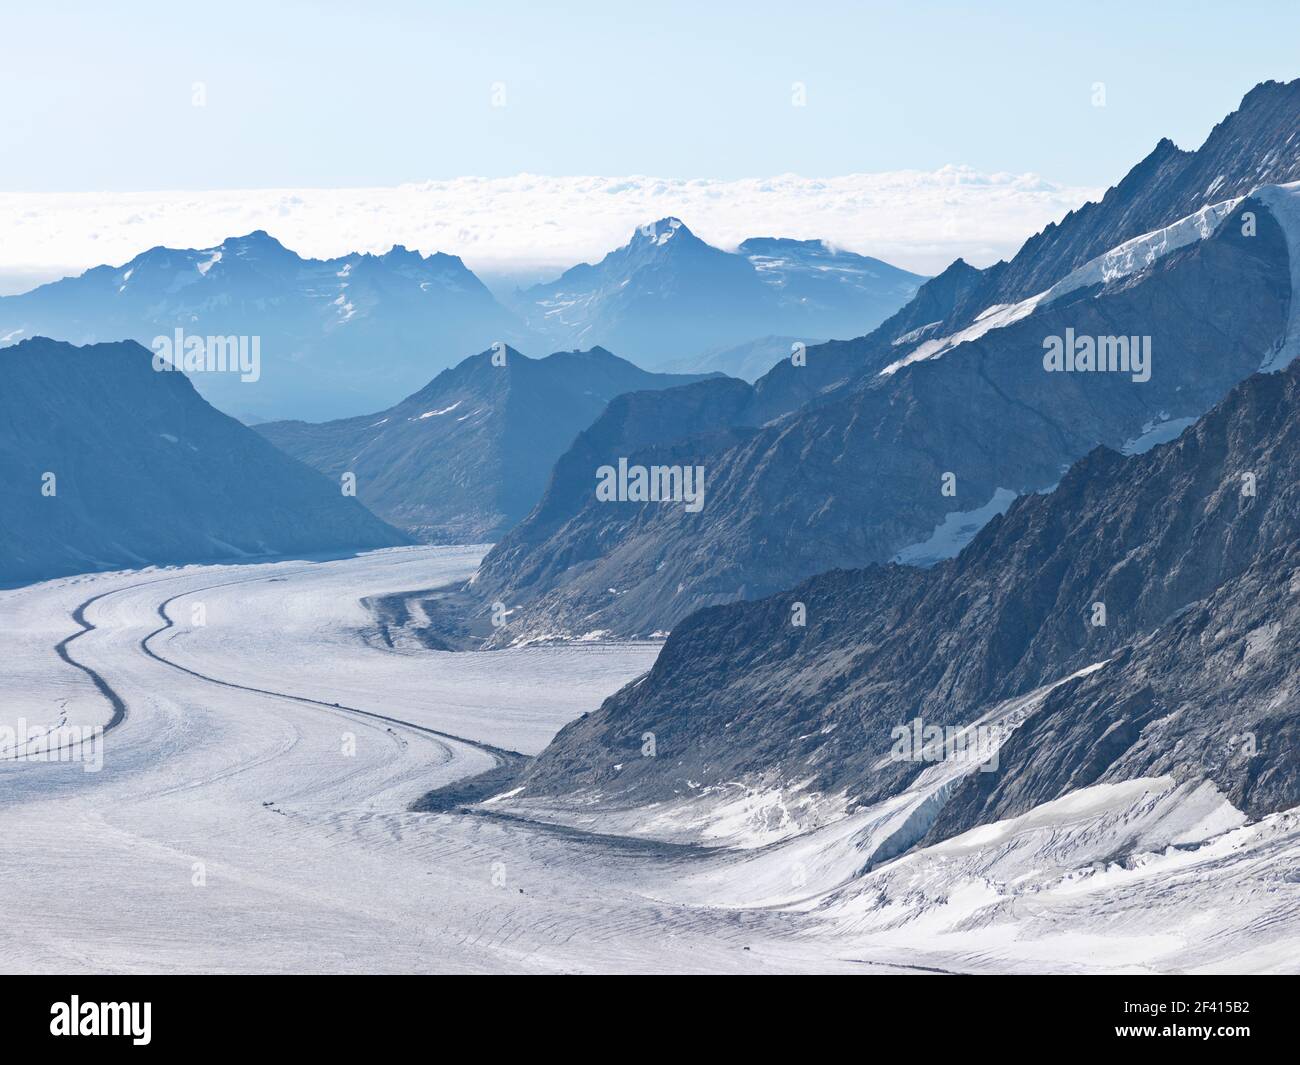 Die Schweiz, der große Aletschgletscher, mit 22 km der längste Eisbach der Alpen, beginnt auf dem Jungfraujoch-Top Europas Stockfoto